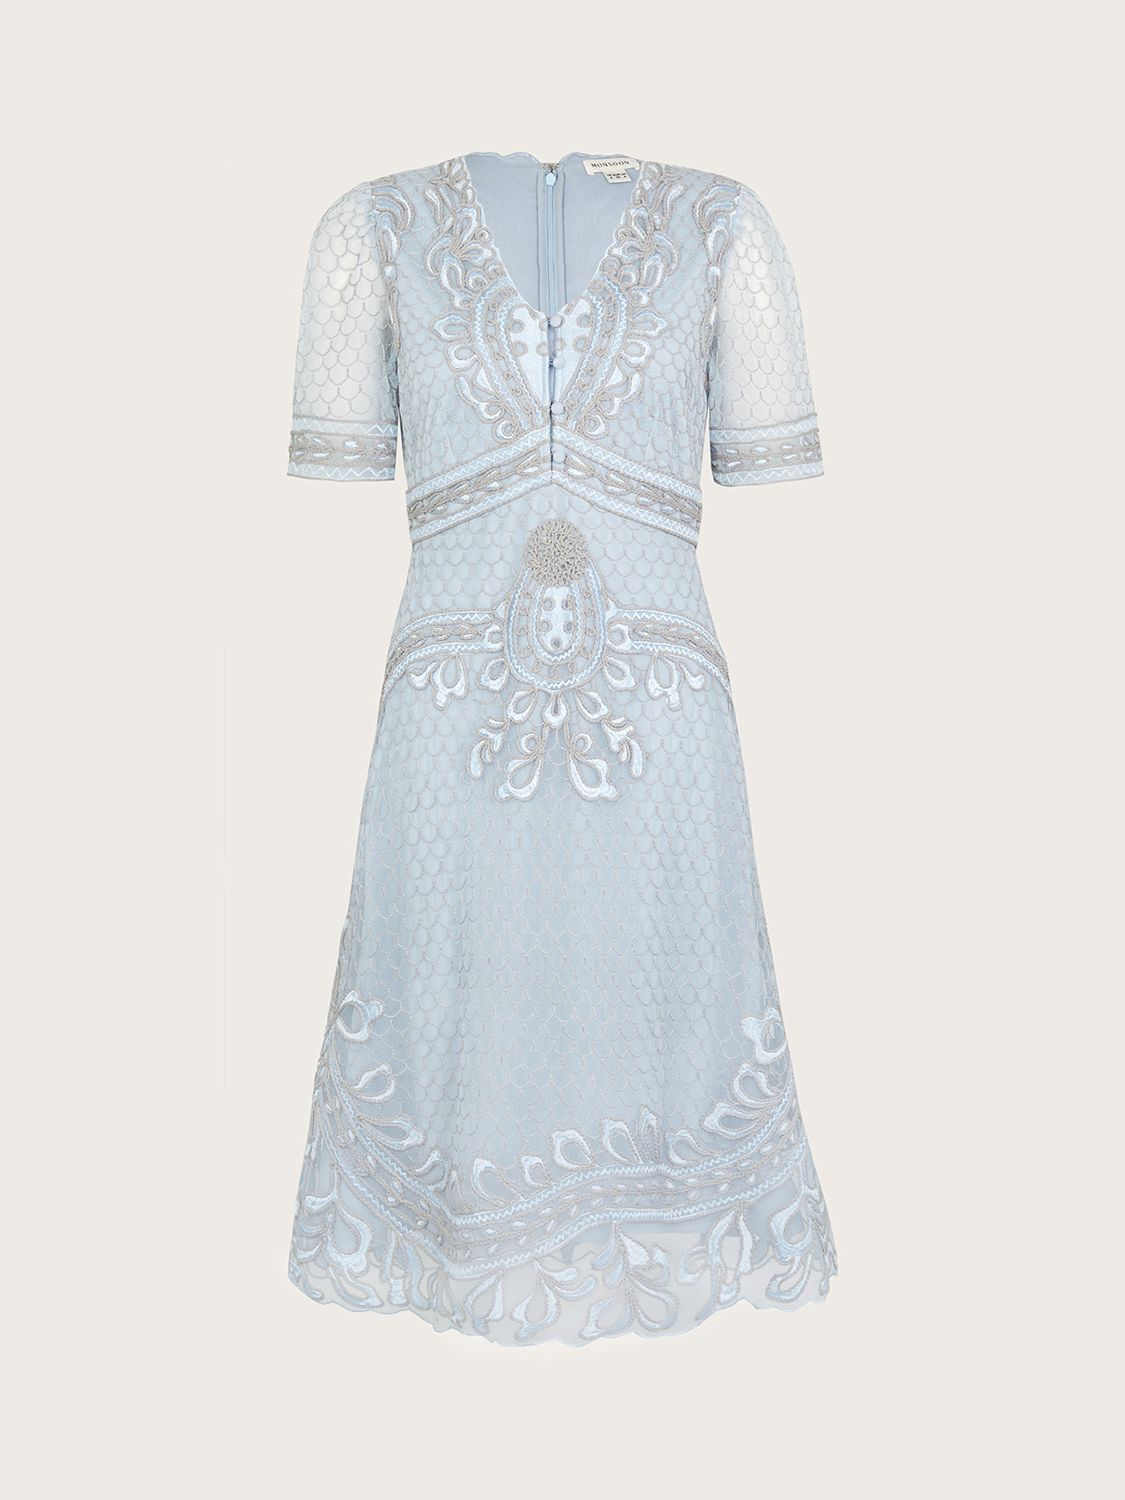 Monsoon Siena Embroidered Tea Dress, Blue, 8